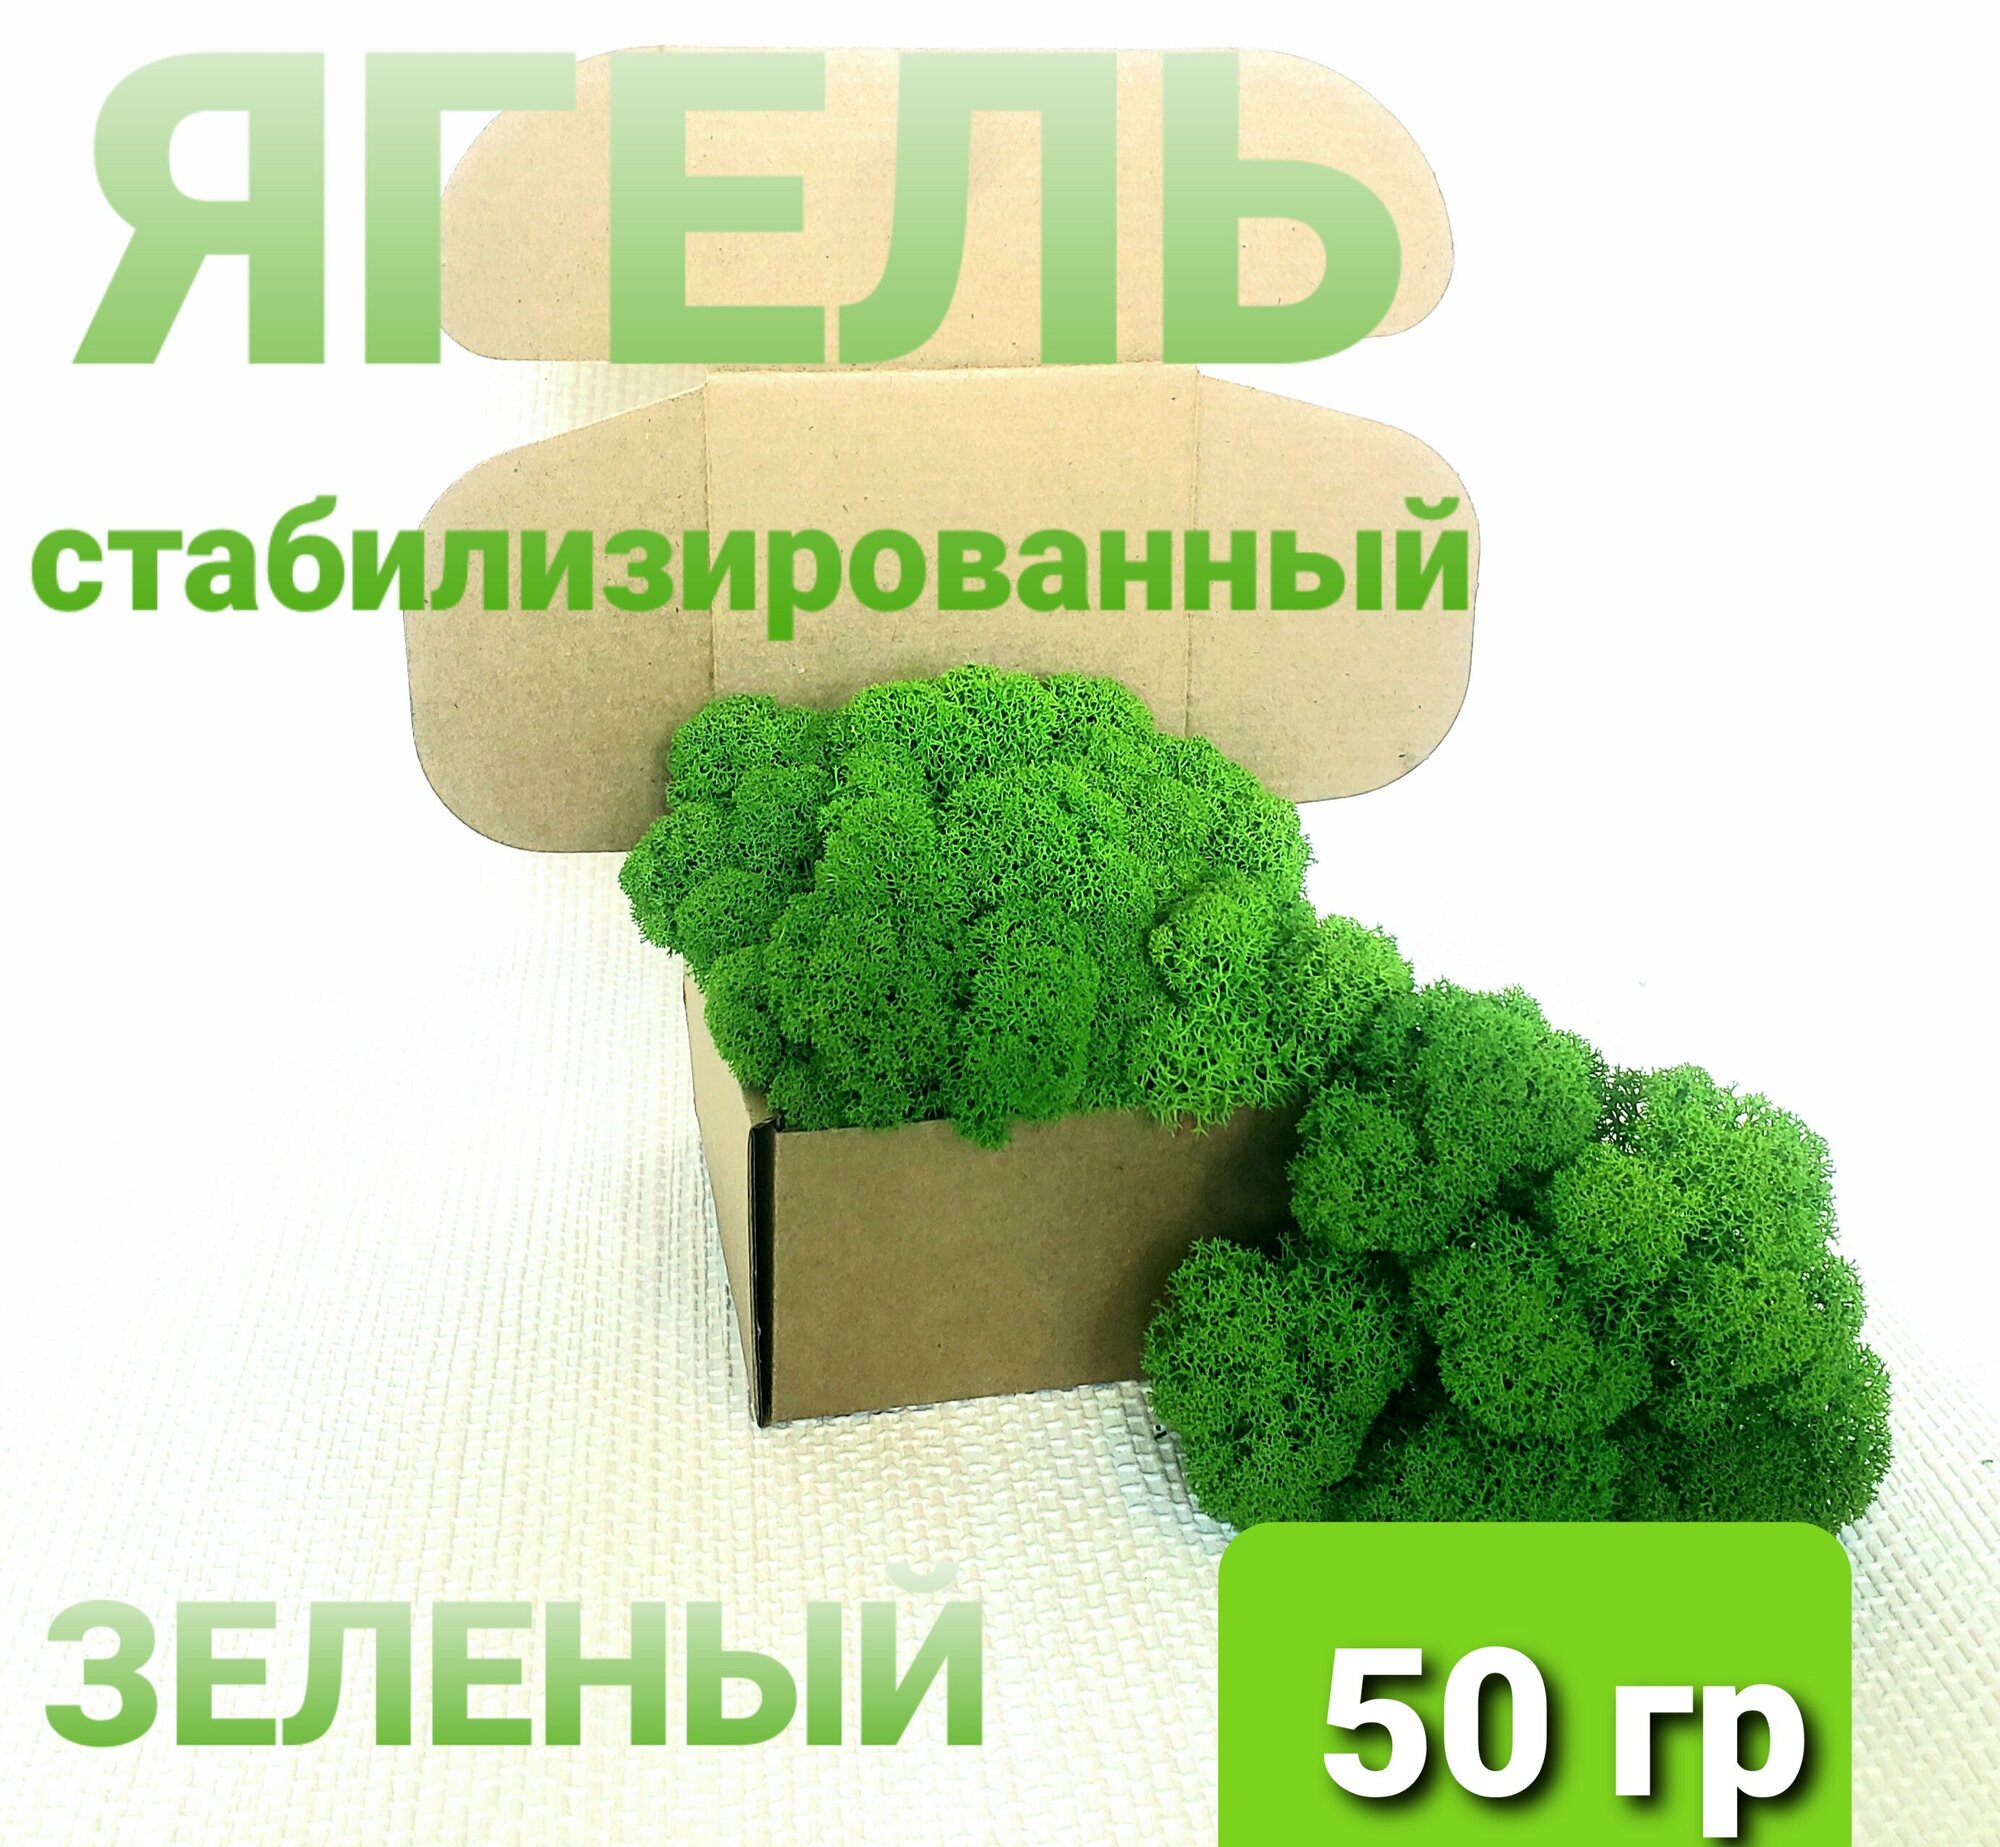 Мох (ягель) стабилизированный зеленый от Norwegian Wood 50 гр